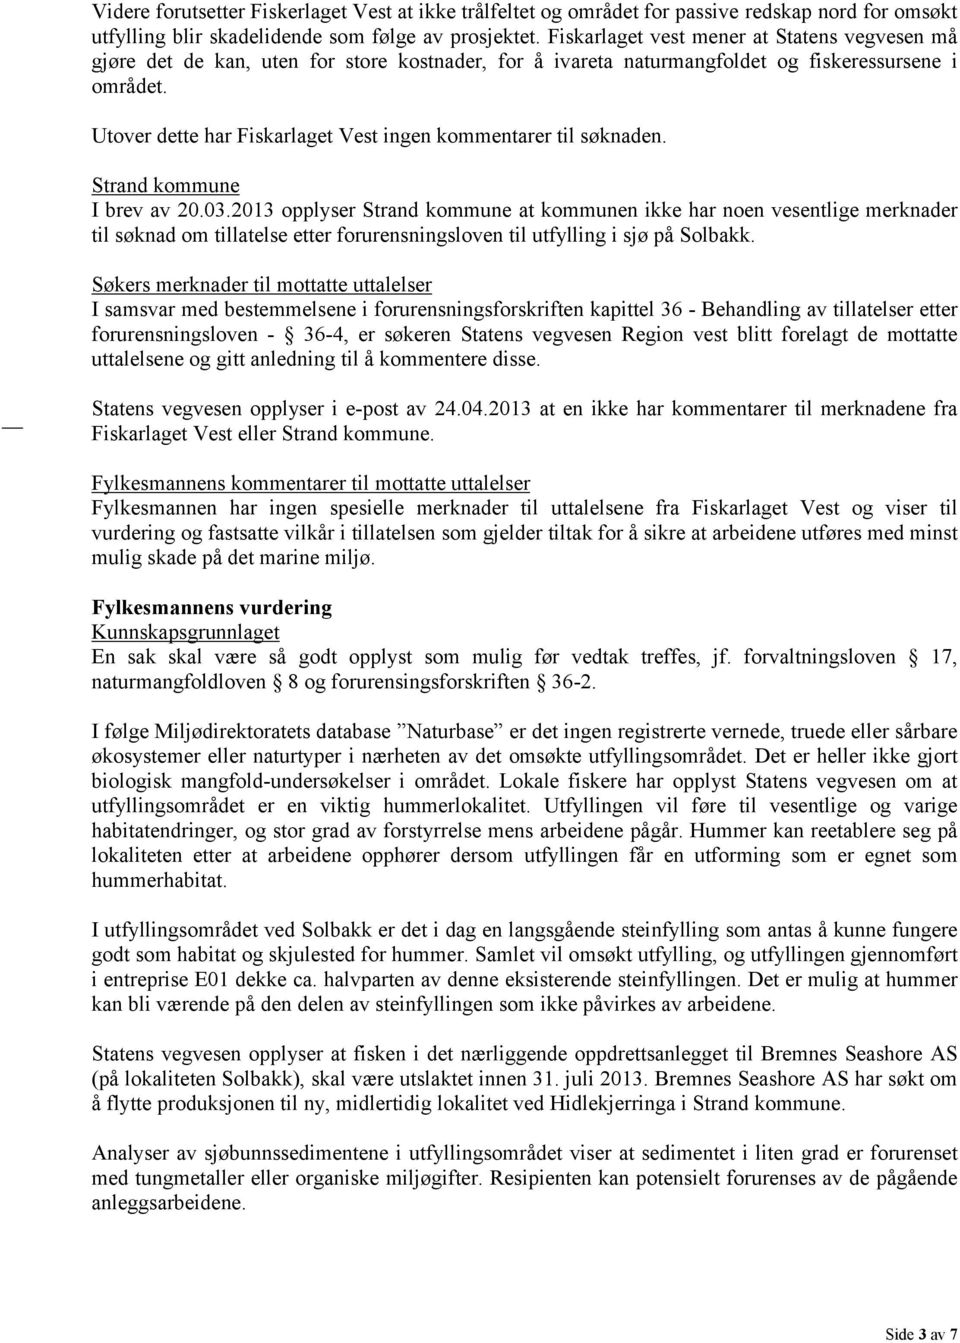 Utover dette har Fiskarlaget Vest ingen kommentarer til søknaden. Strand kommune I brev av 20.03.